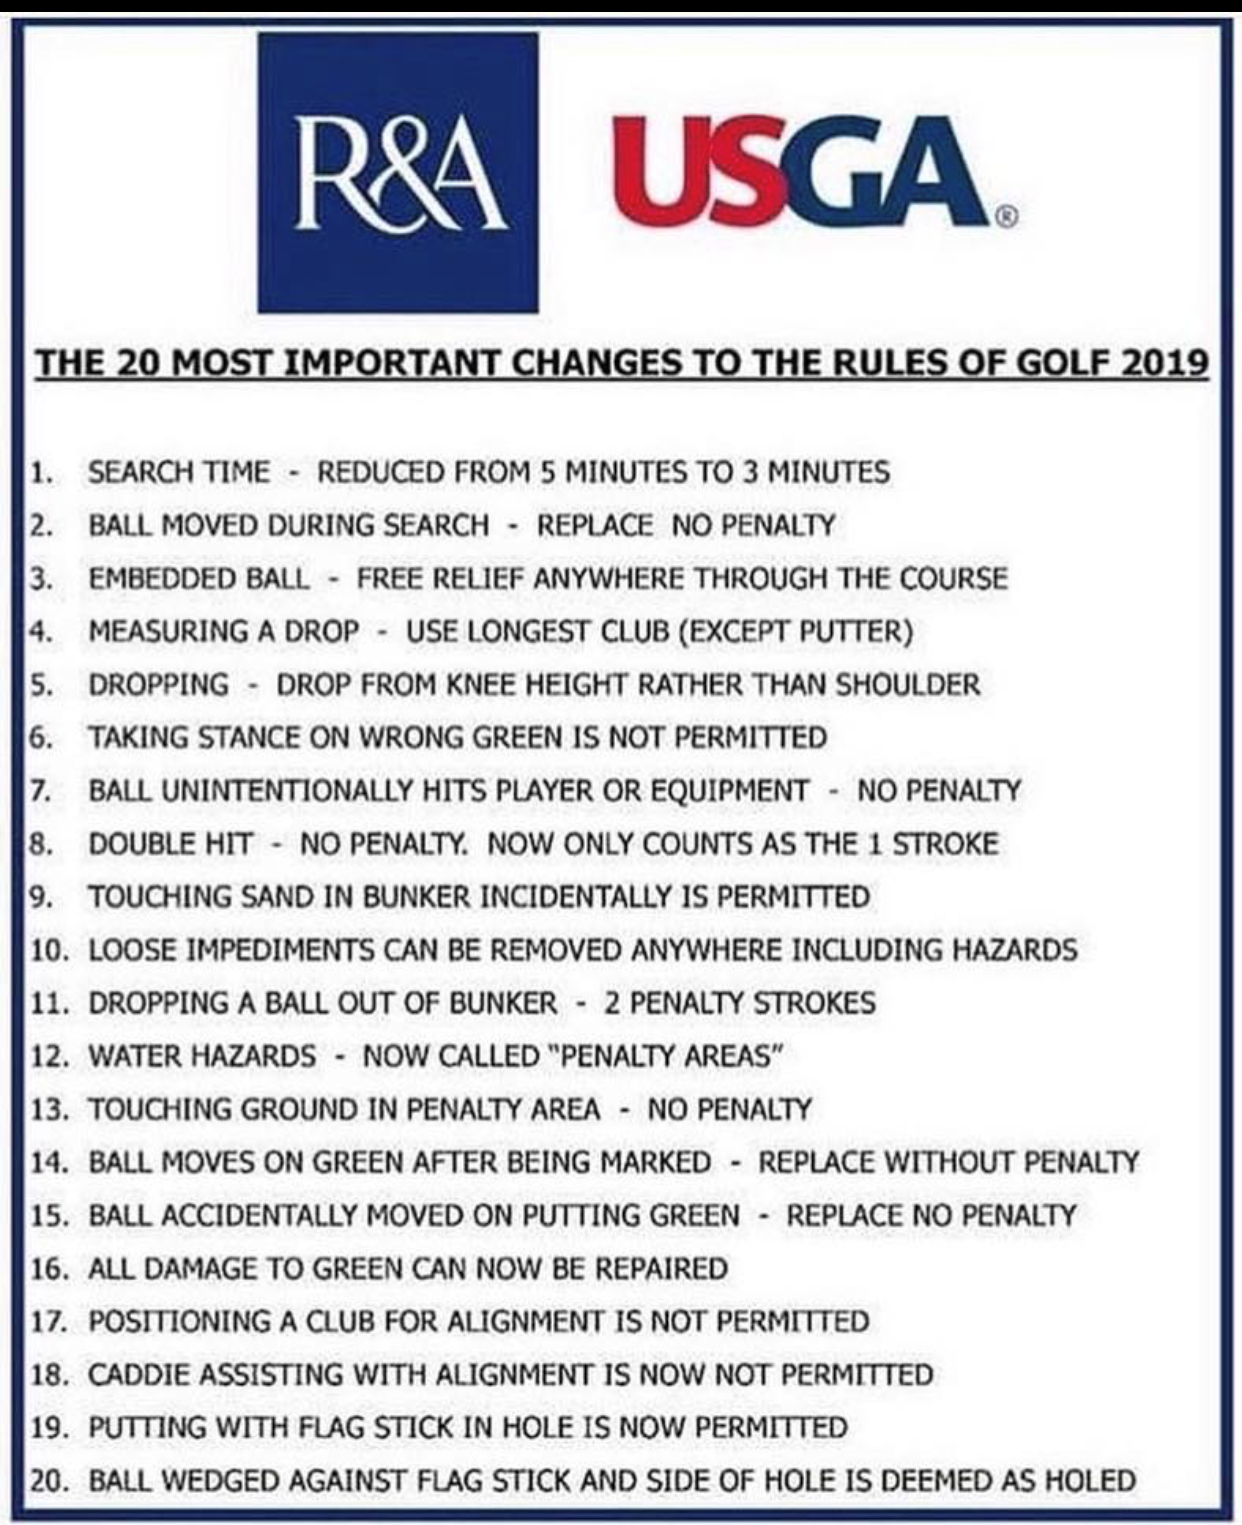 USGA Rules Changes for 2019 & CJGT